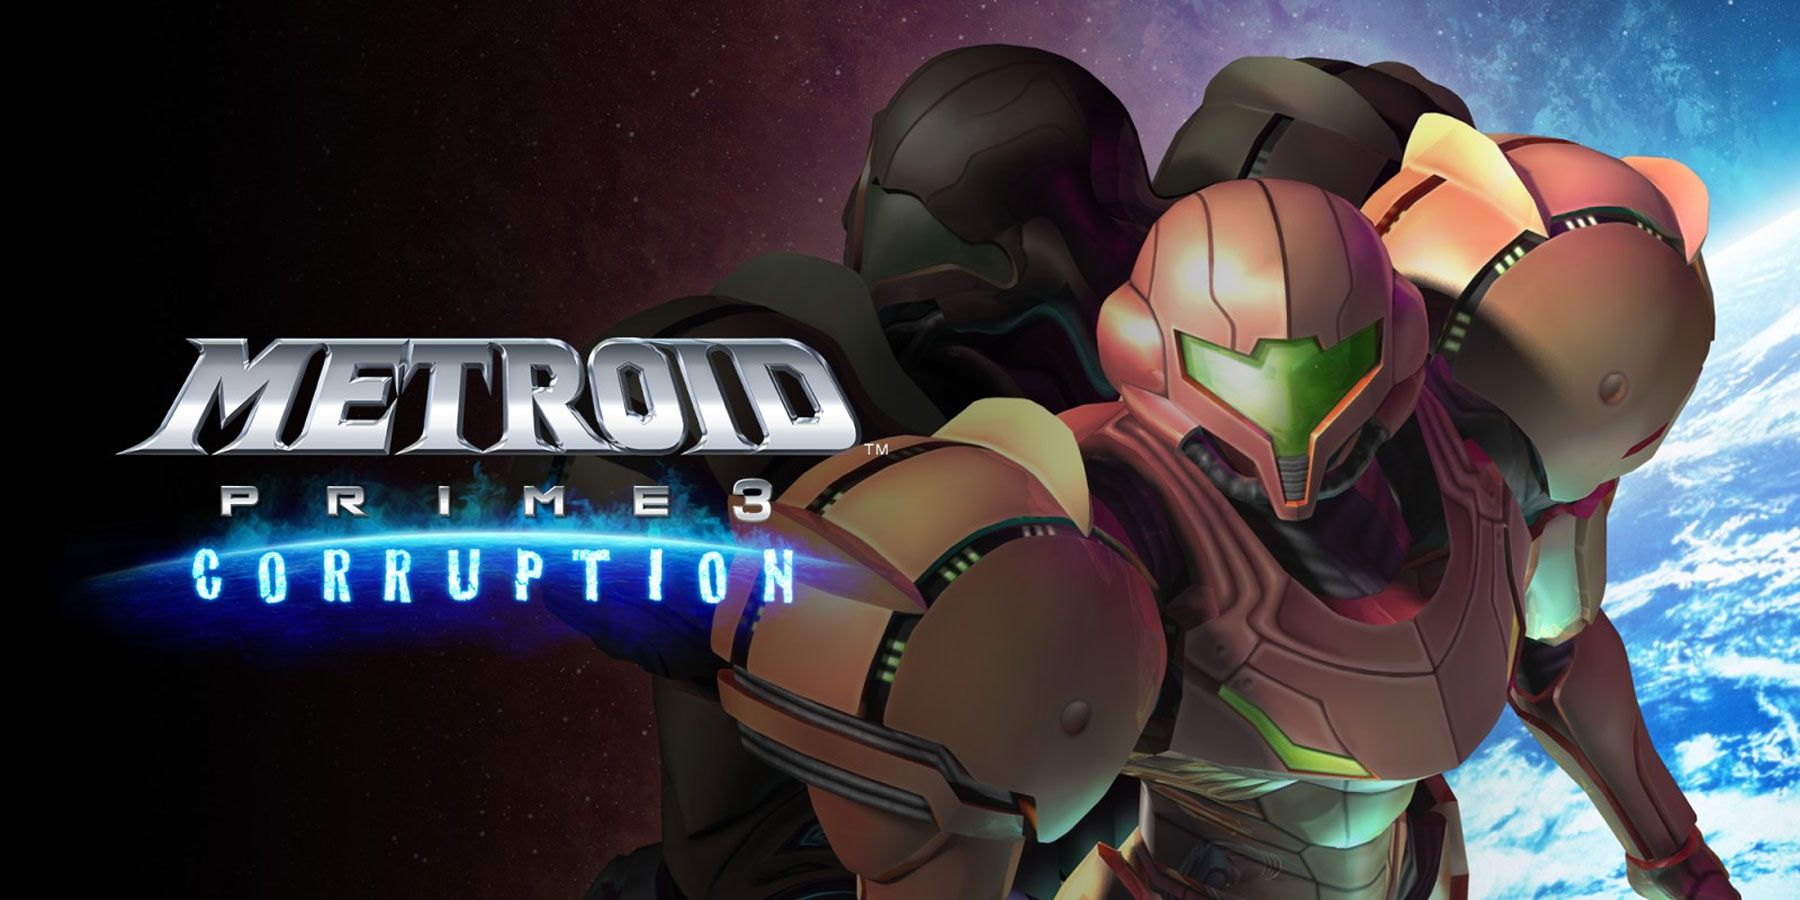 Metroid Prime 3 blev oprindeligt præsenteret som et åbent verdensspil